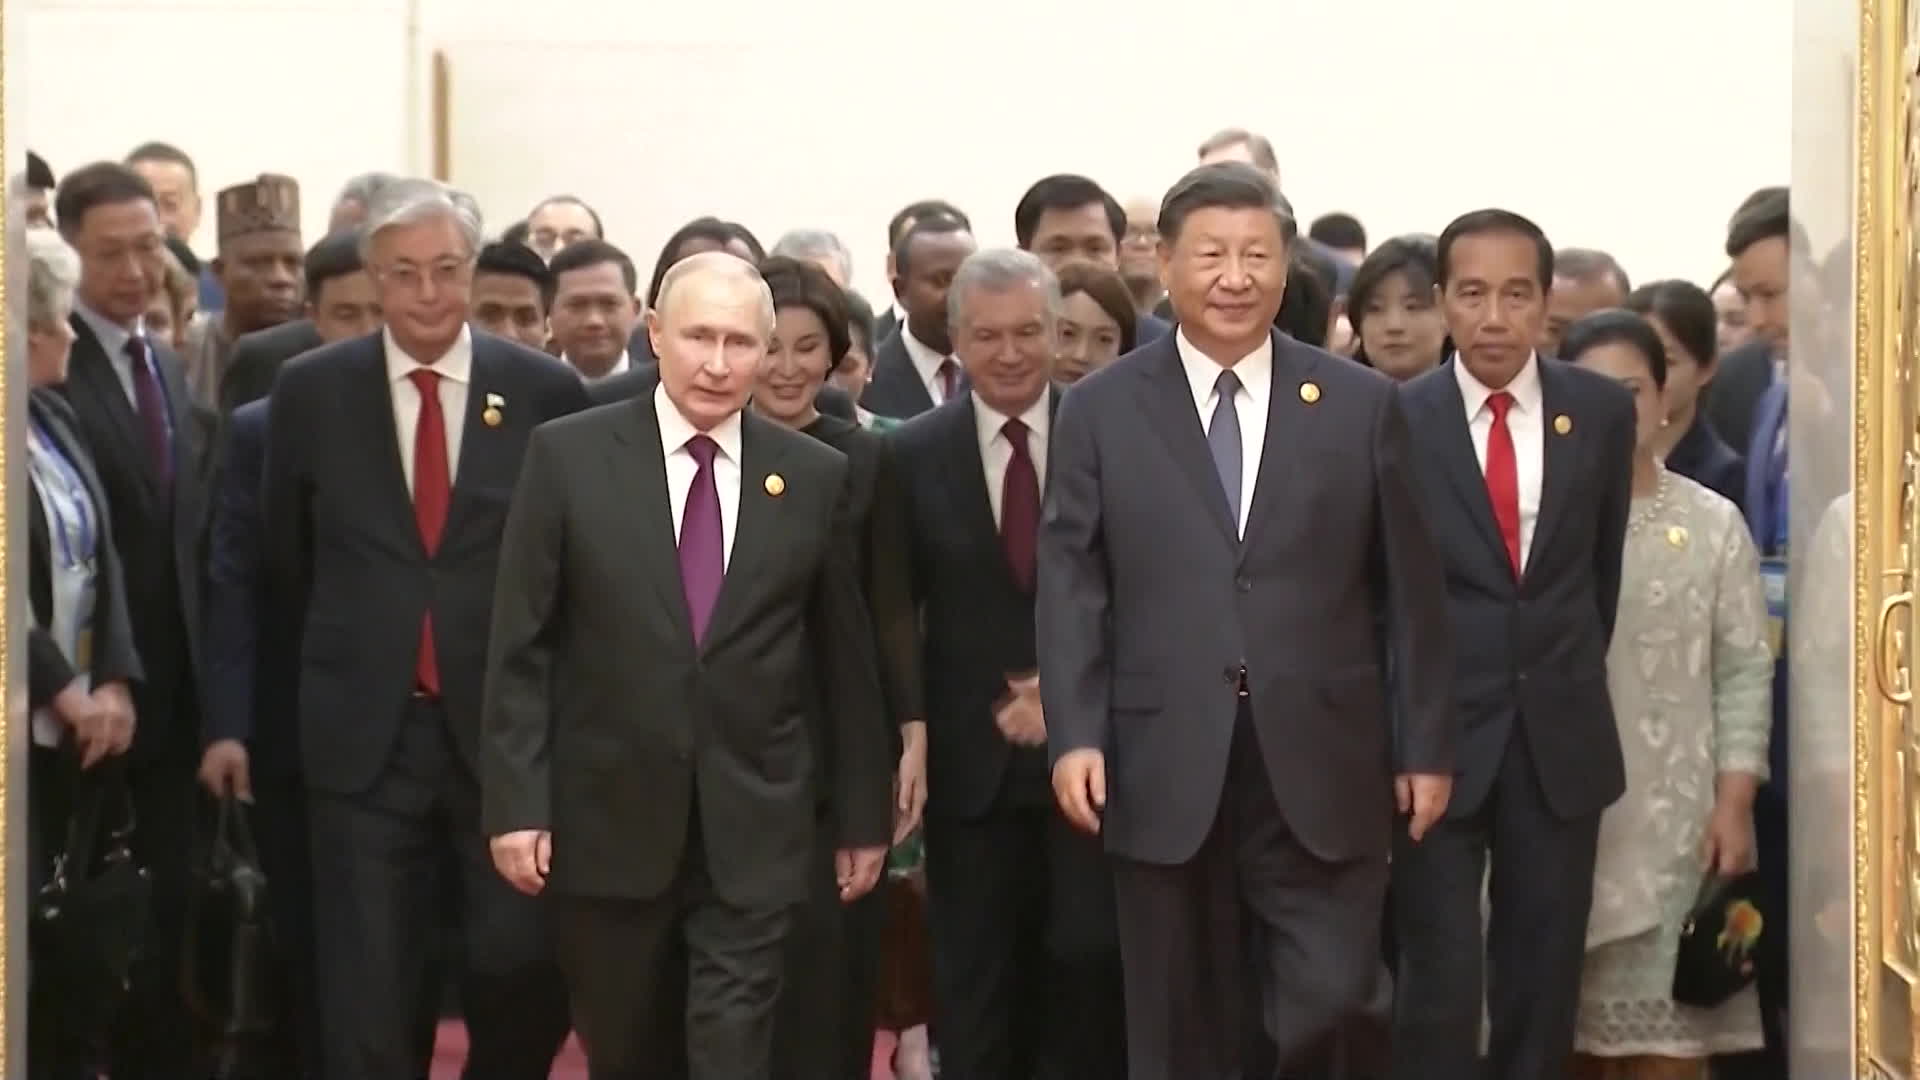 일대일로 포럼에서 각 국 정상들이 만찬장에 입장하는 모습. 시진핑 주석과 푸틴 대통령이 맨 앞에서 나란히 서서 다른 정상들을 이끌며 들어오는 것이 눈에 띕니다.